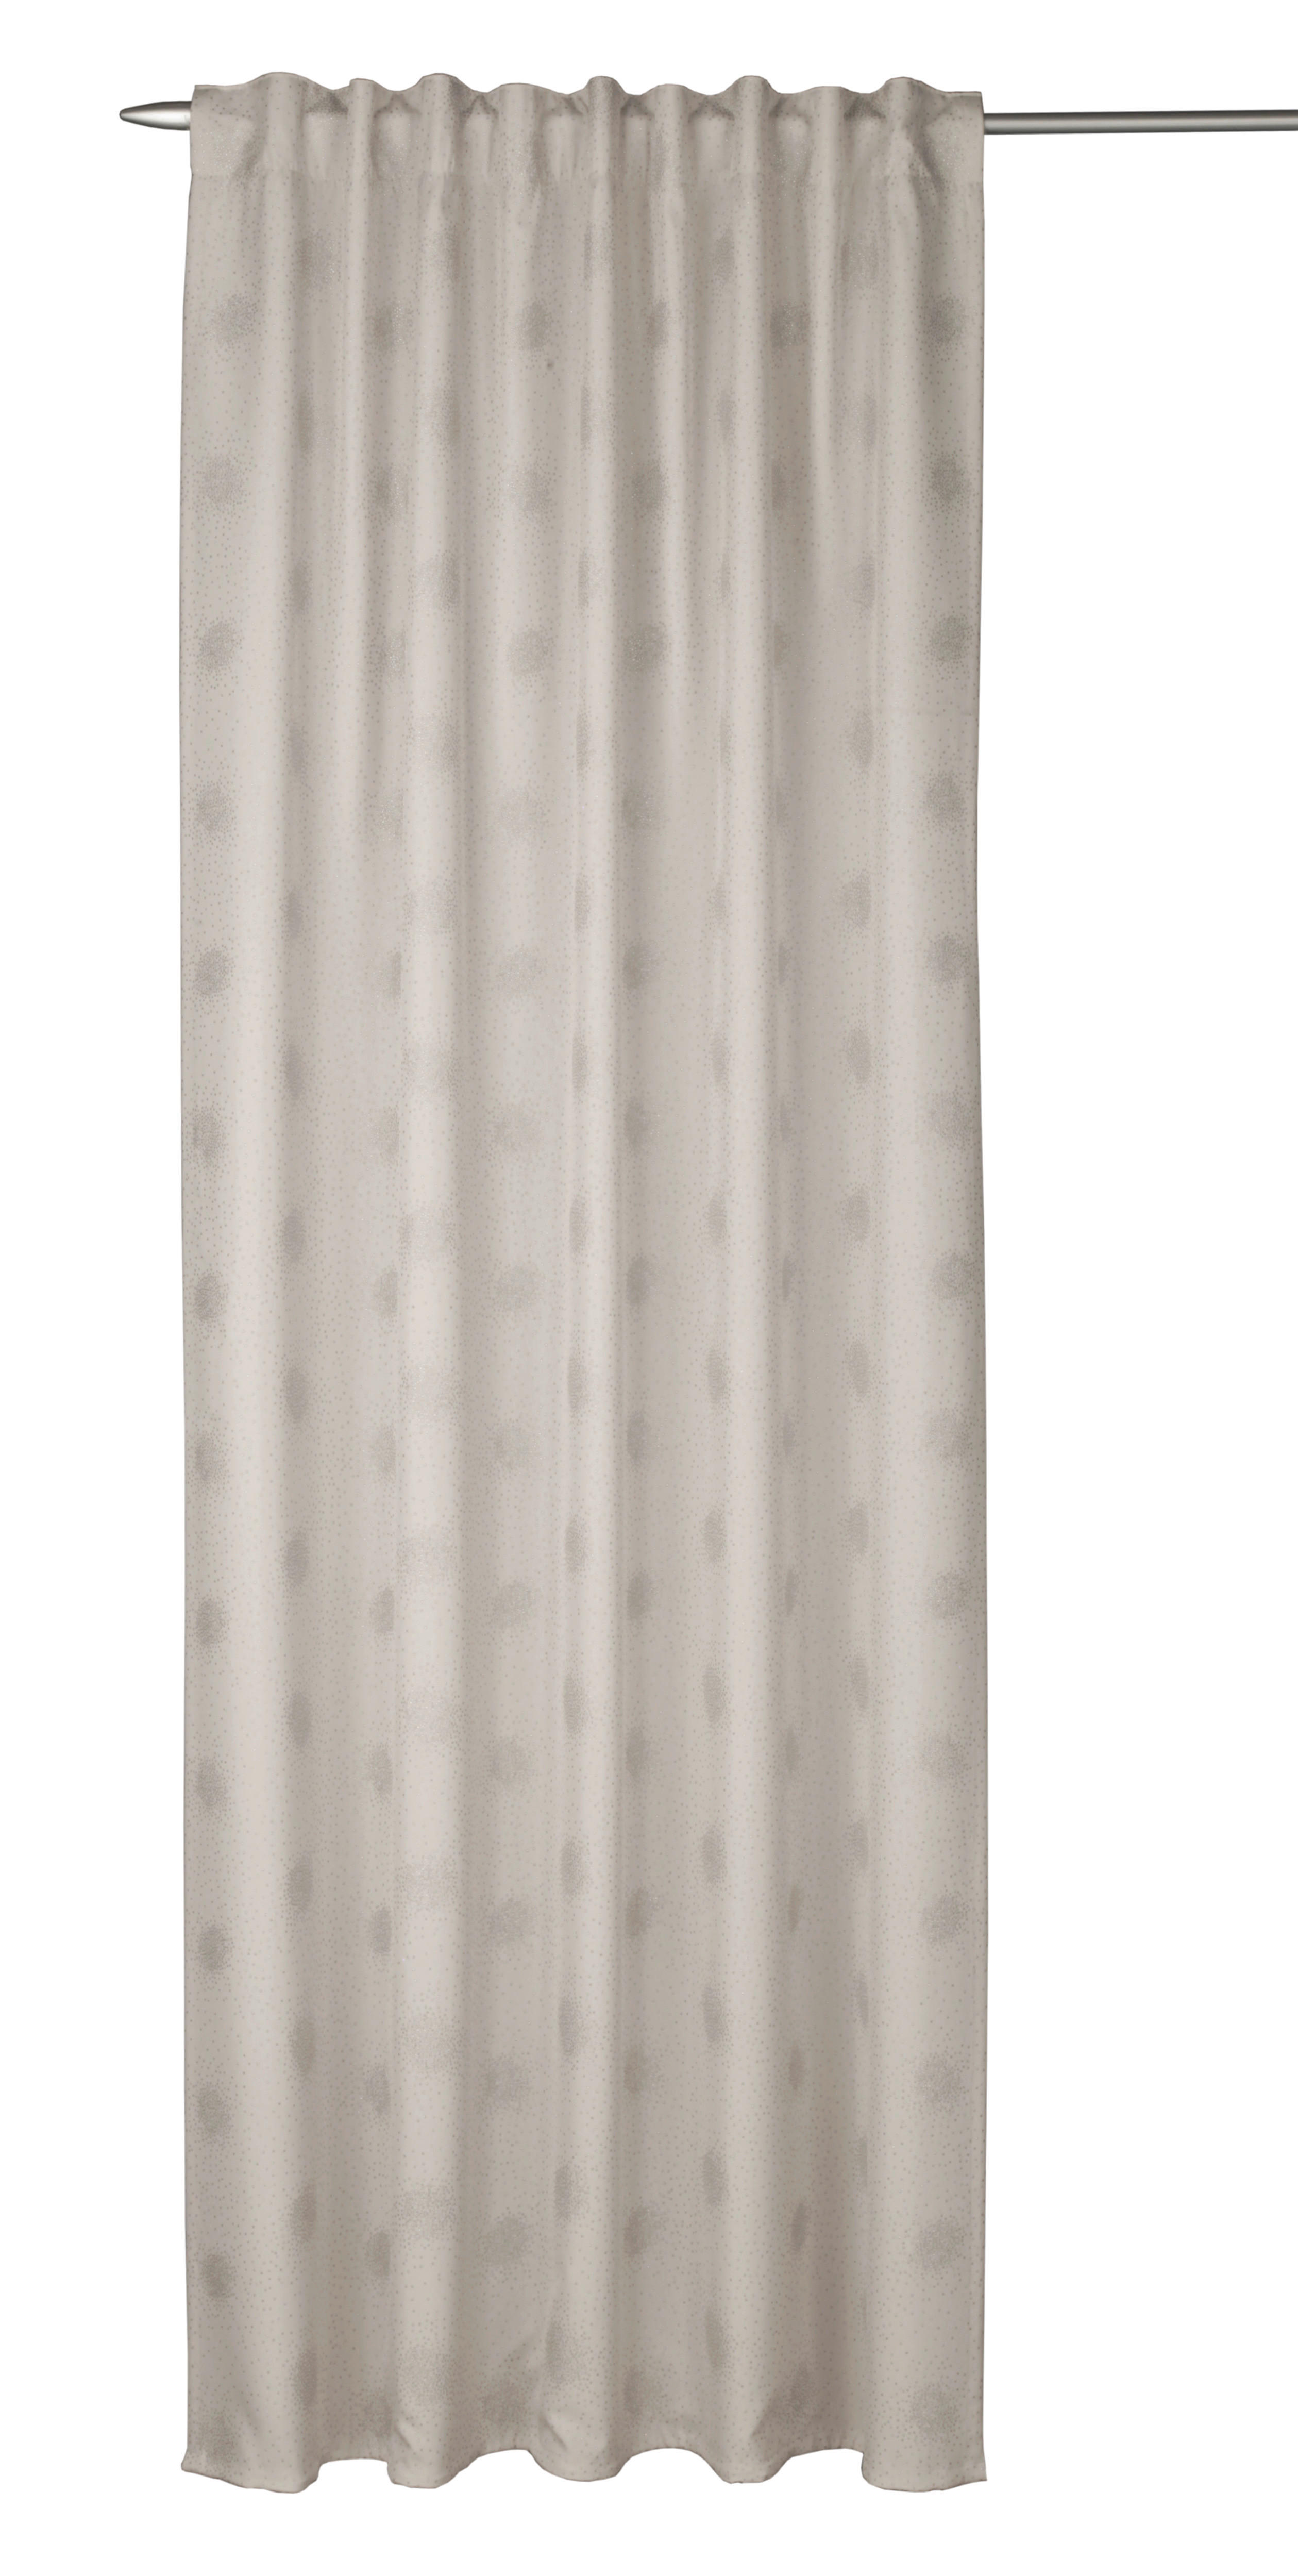 Esposa HOTOVÝ ZÁVĚS, zatemnění, 135/255 cm - barvy stříbra